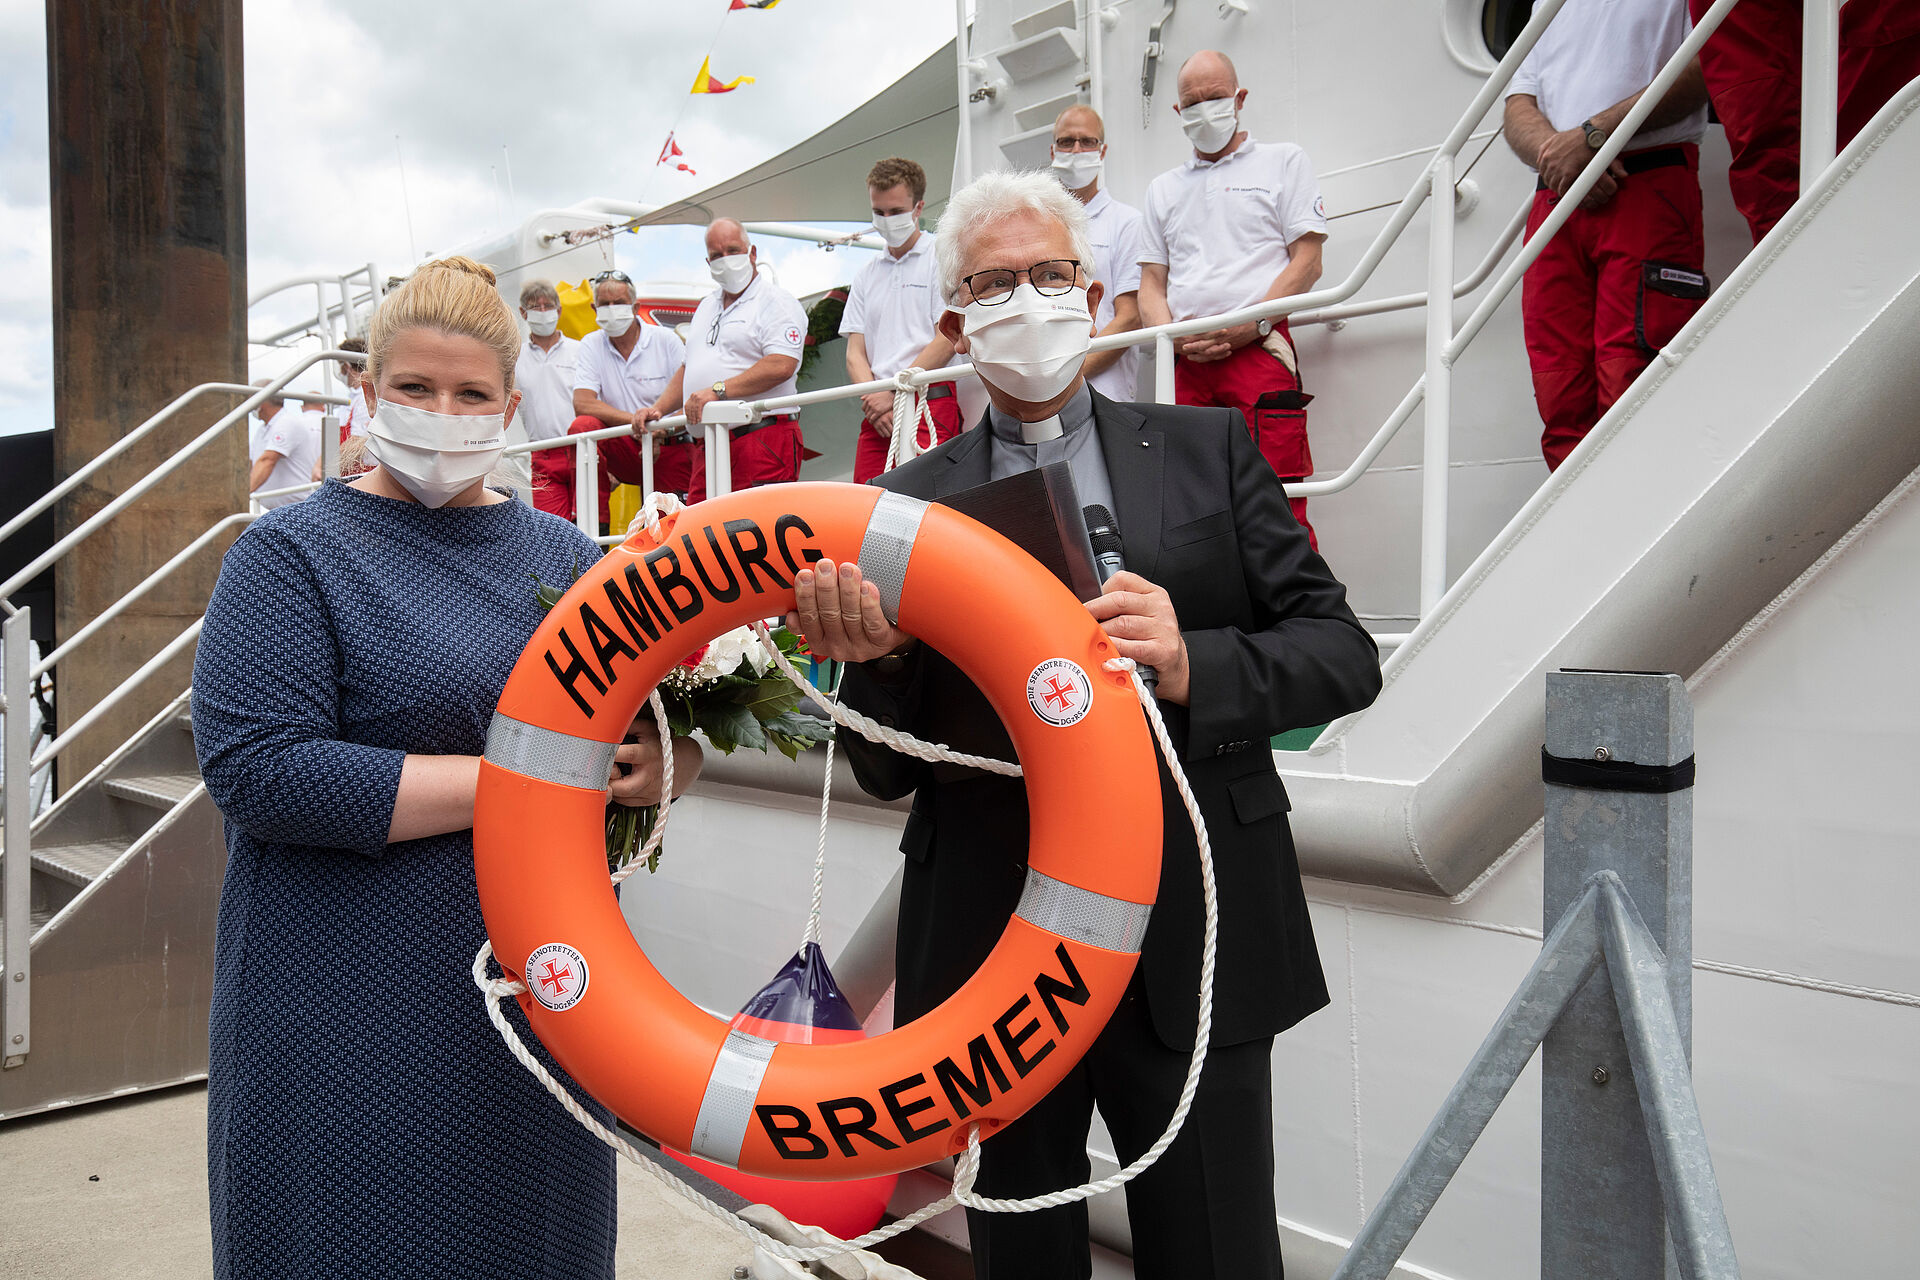 Zwei Personen halten einen Rettungsring mit der Aufschrift HAMBURG BREMEN